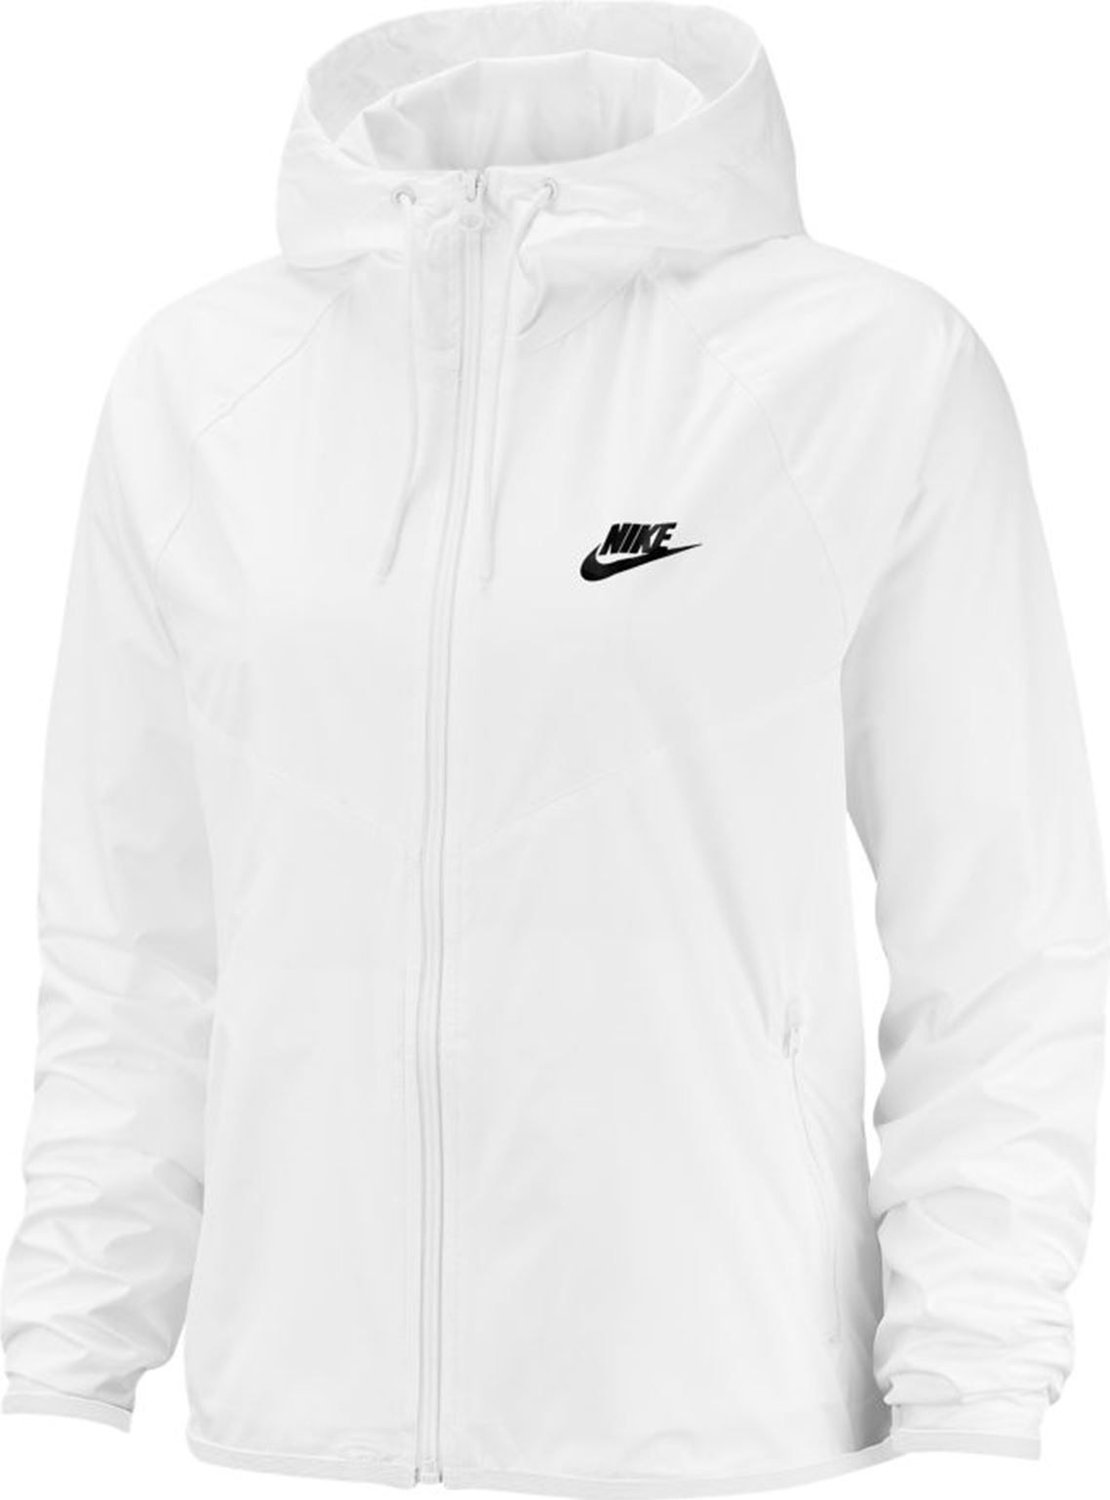 damska Sportswear Windrunner Nike biała - Sport-Shop.pl